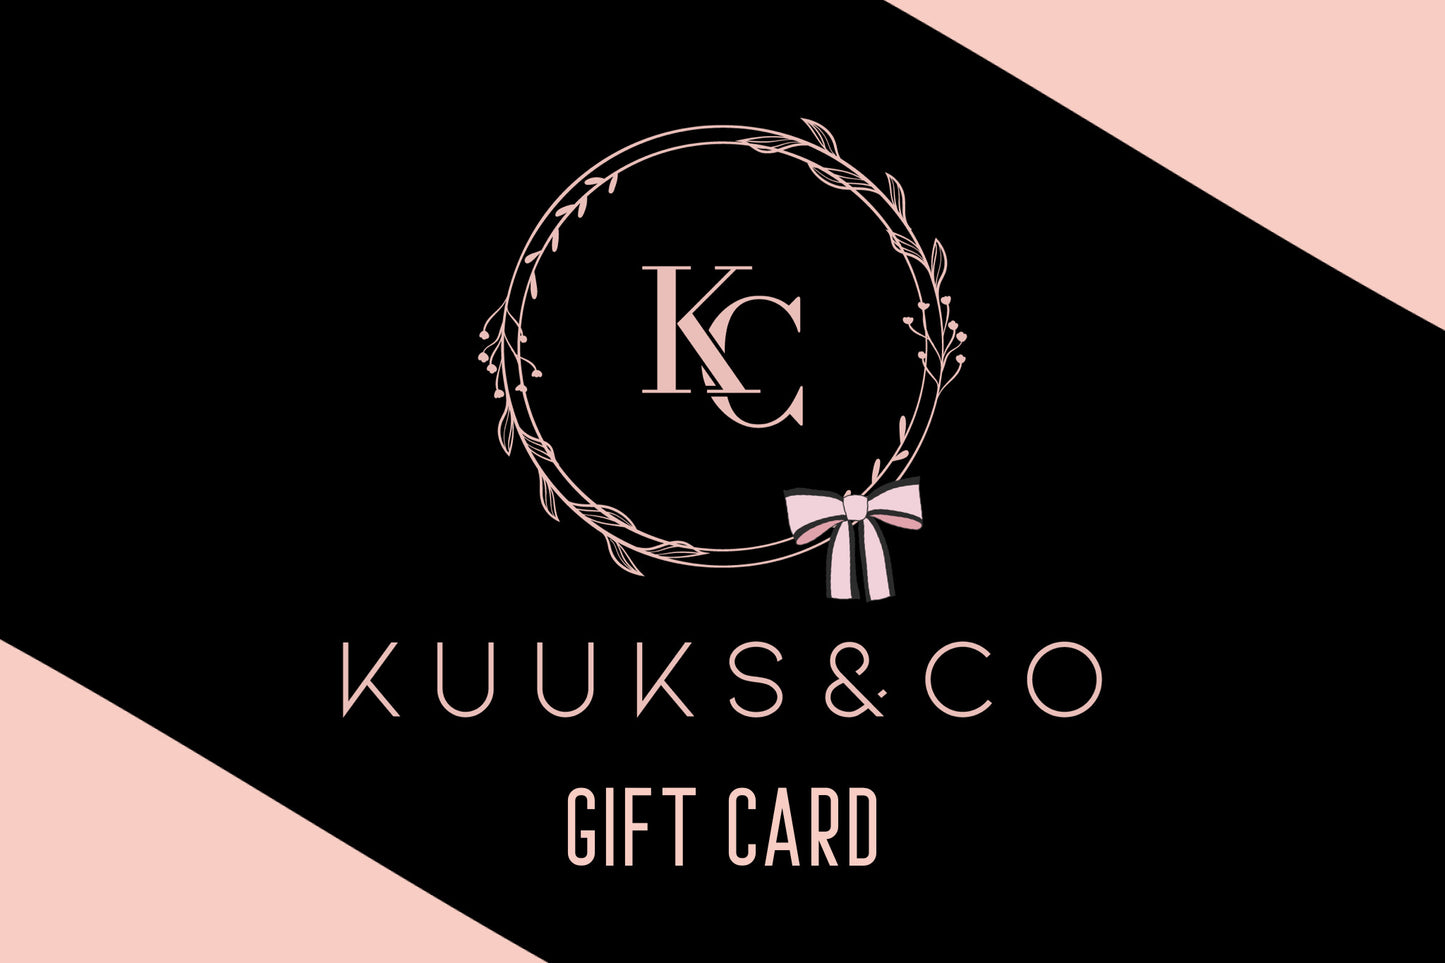 Kuuks & Co. Gift Card